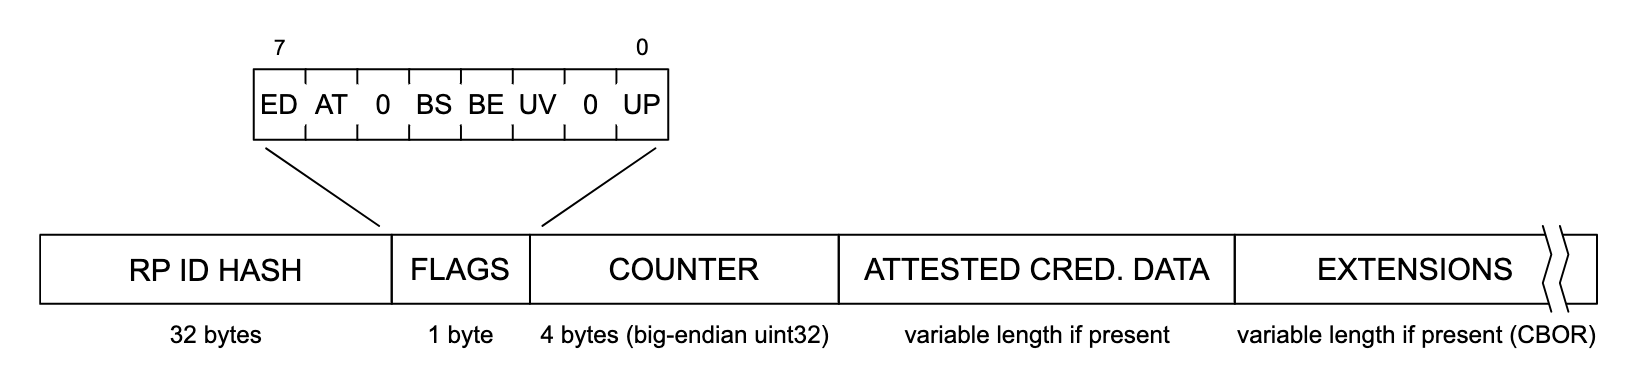 認証データ構造の図。左から右に、データ構造の各セクションは、「RP ID HASH」（32 バイト）、「FLAGS」（1 バイト）、「COUNTER」（4 バイト、ビッグエンディアン uint32）、「ATTESTE CRED」を読みます。DATA（存在する場合は可変長）、EXTENSIONS（存在する場合は可変長（CBOR））。「FLAGS」セクションを展開して、左から右にラベル「ED」、「AT」、「0」、「BS」、「BE」、「UV」、「0」、「UP」とラベル付けされた、潜在的なフラグのリストを表示します。